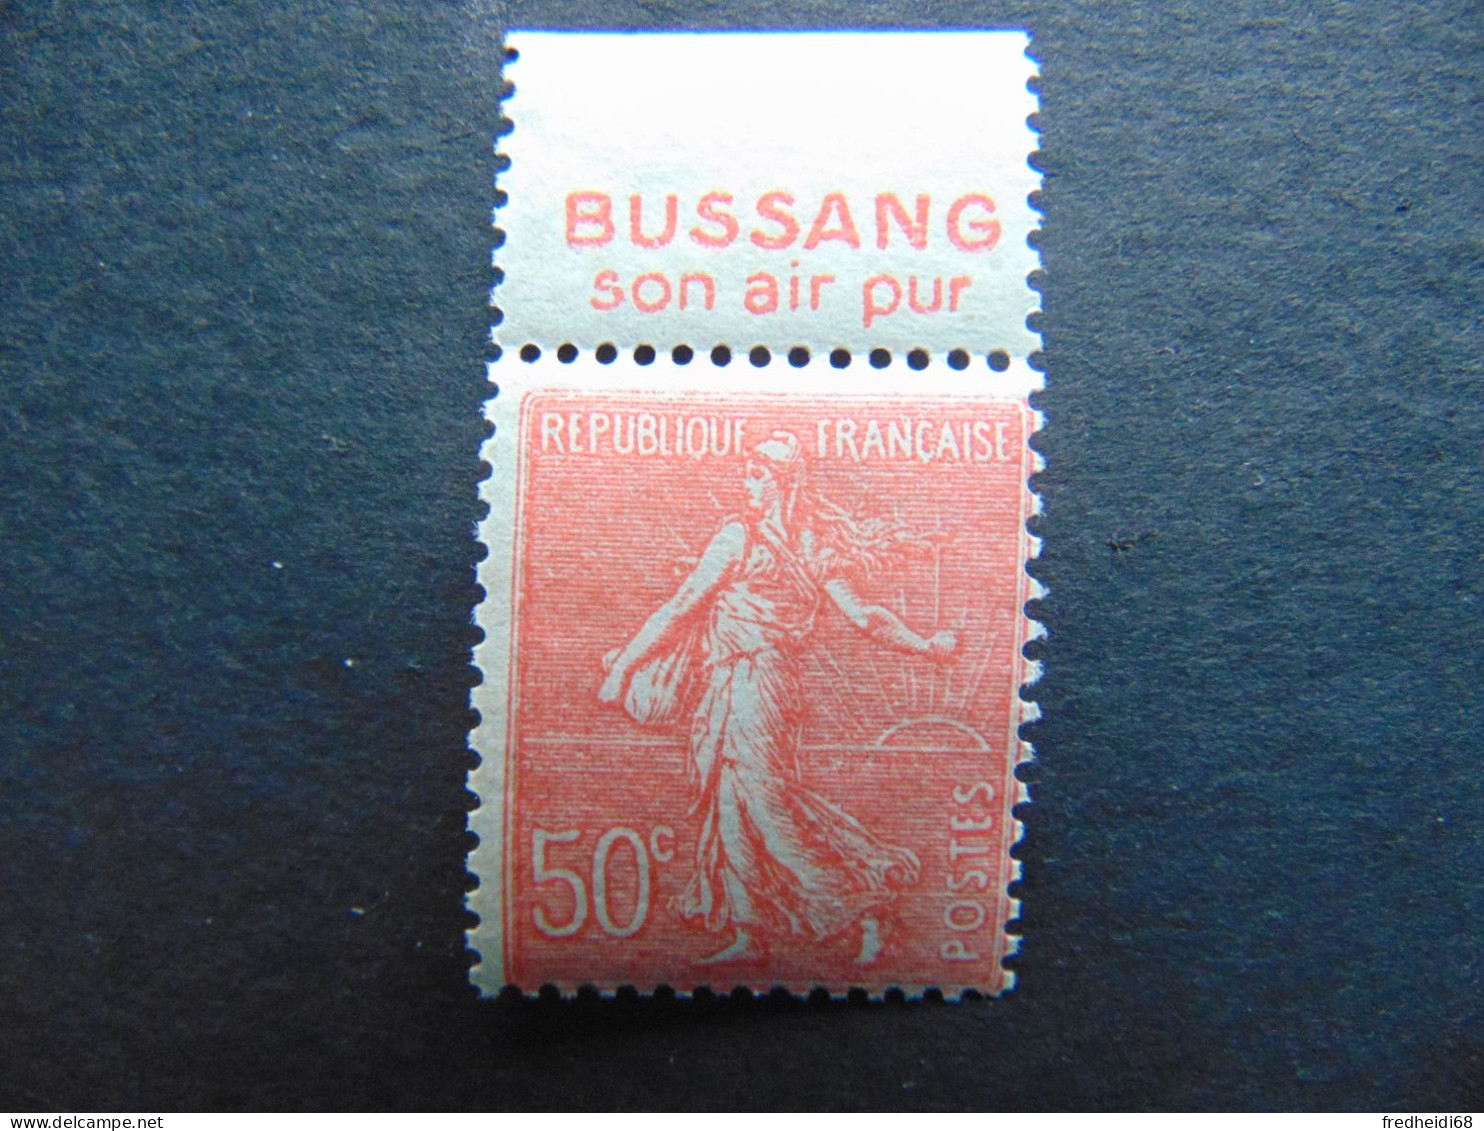 Très Bel Ensemble De 2 Types Semeuse Lignée à 50 Centimes Avec Publicité Bussang - N°. 181** - Unused Stamps